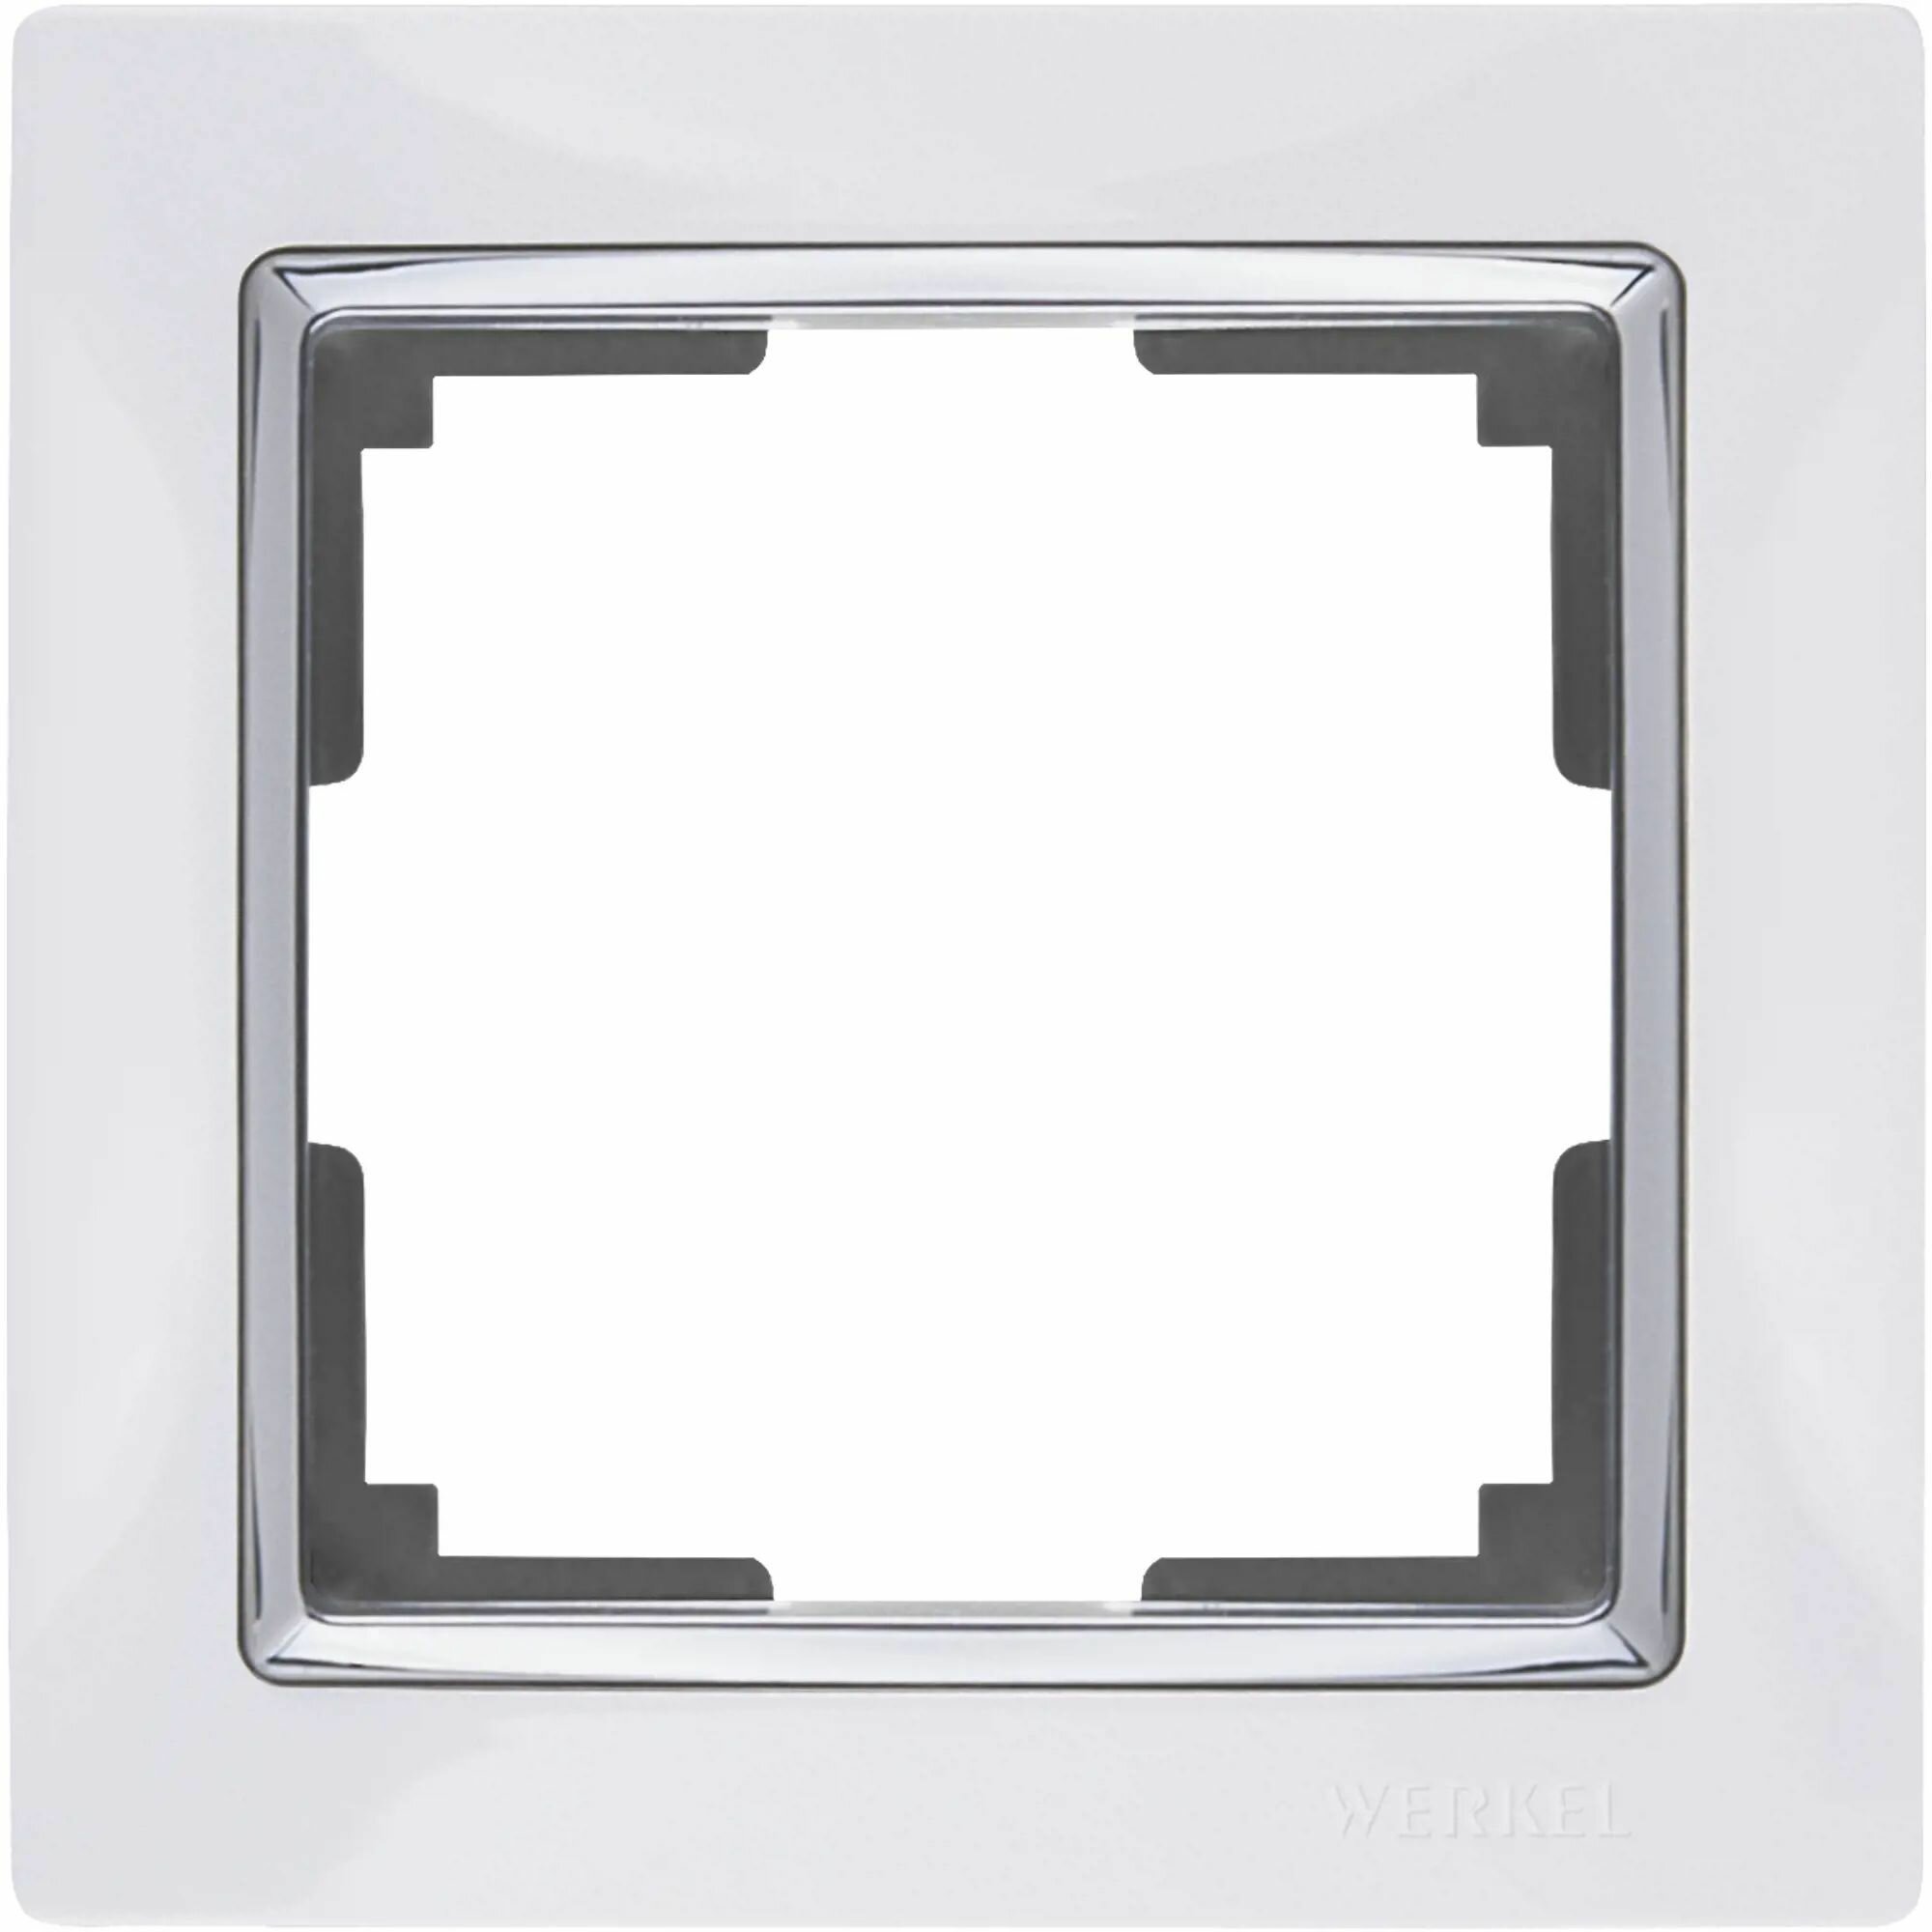 Рамка для розеток и выключателей Werkel Snabb 1 пост цвет белый/хром